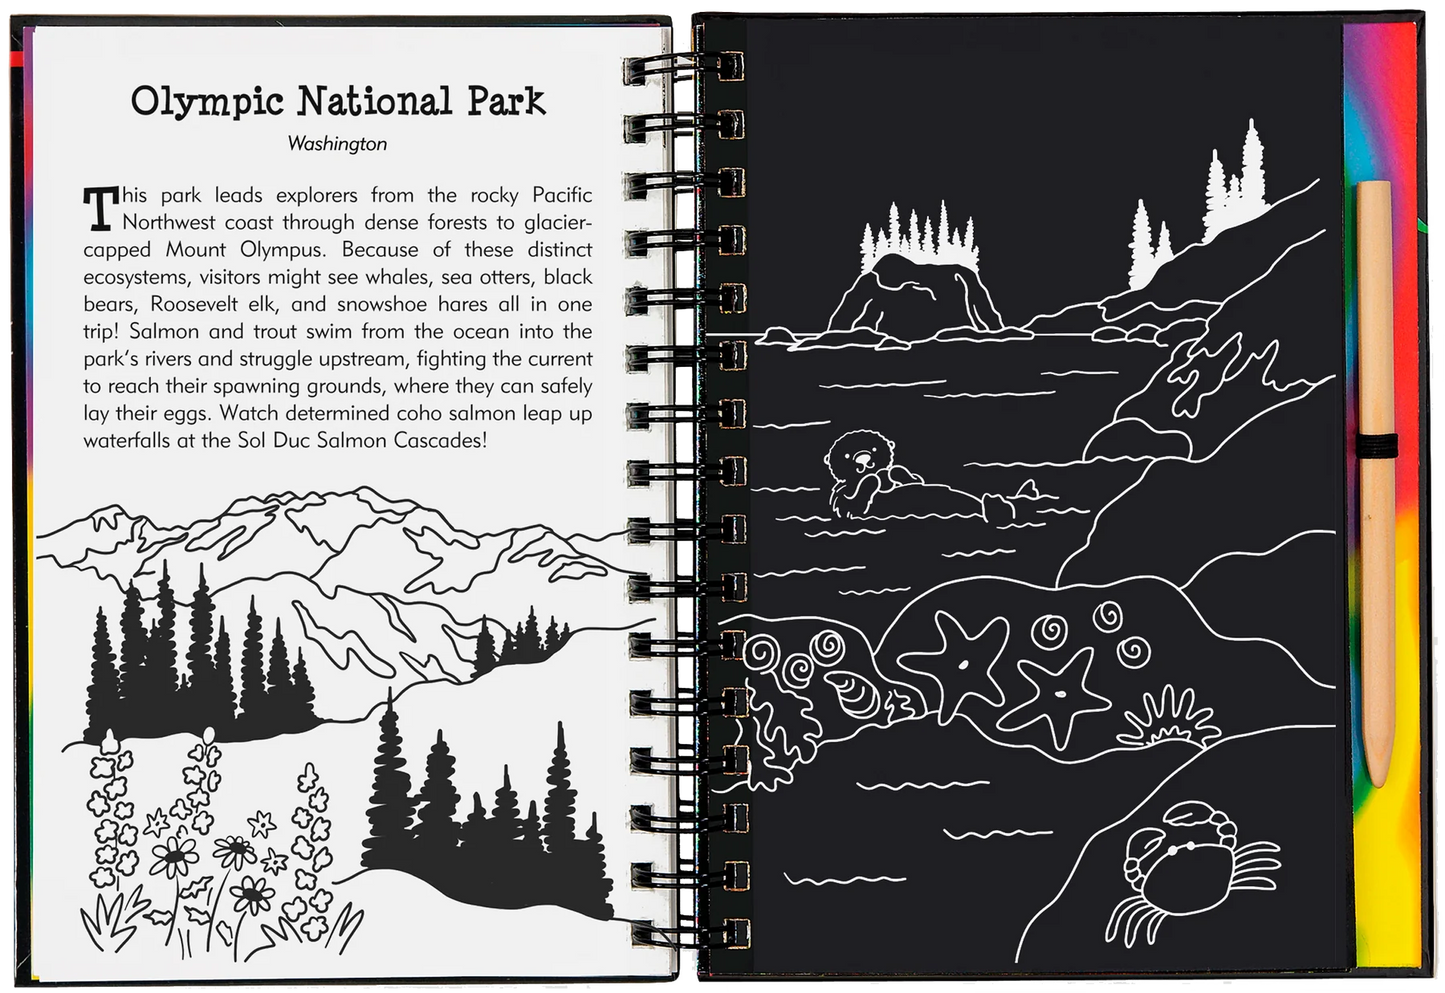 Scratch & Sketch - National Parks & Landmarks